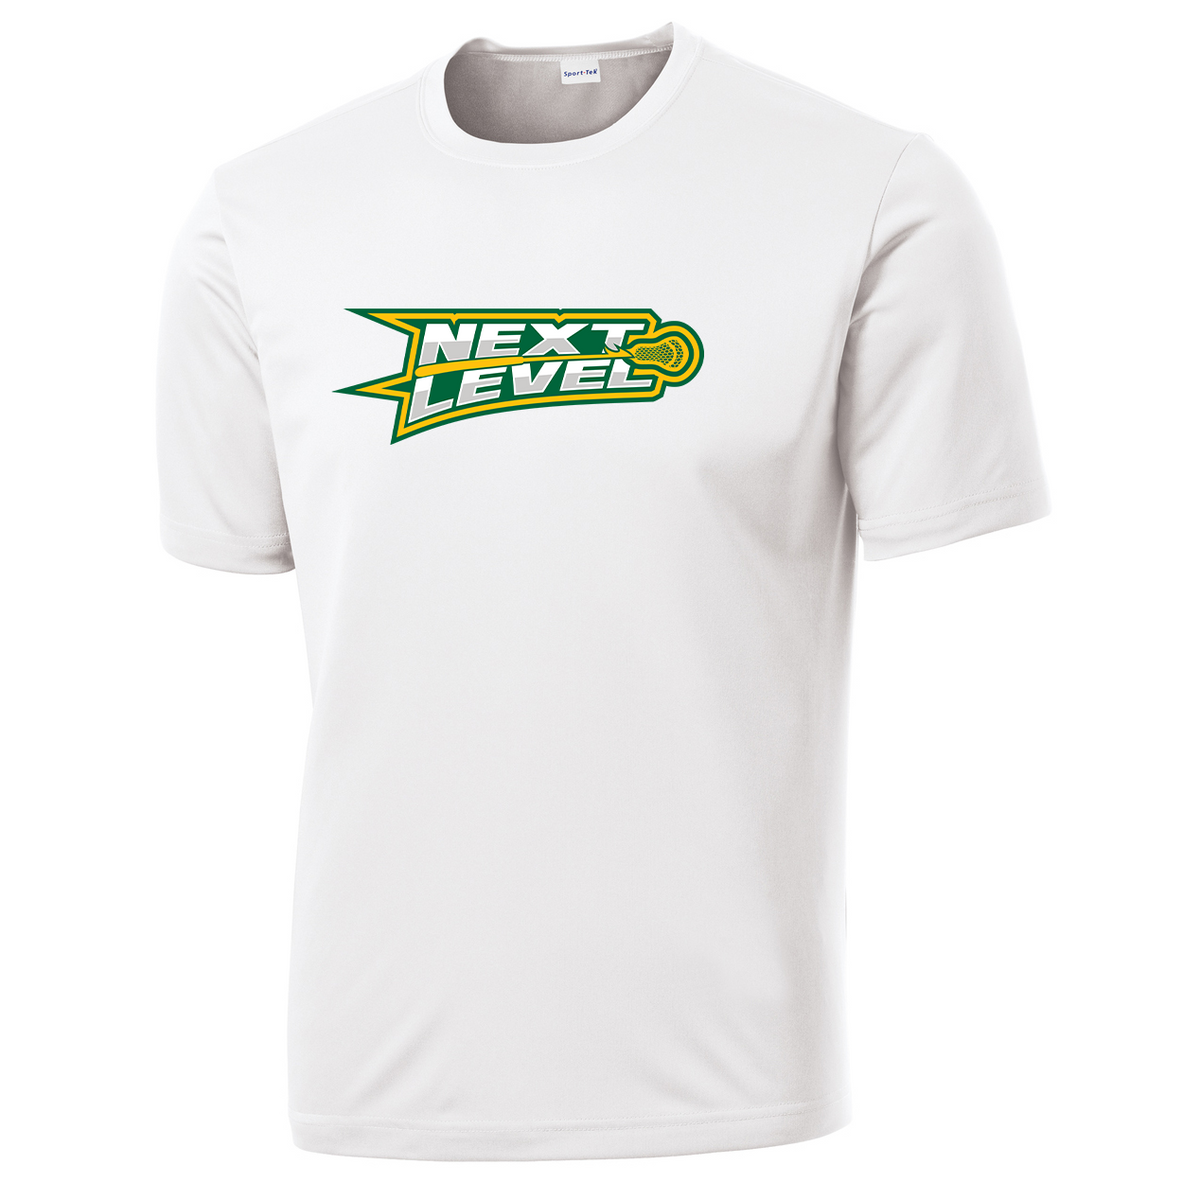 Next Level Northwest Lacrosse Performance T-Shirt